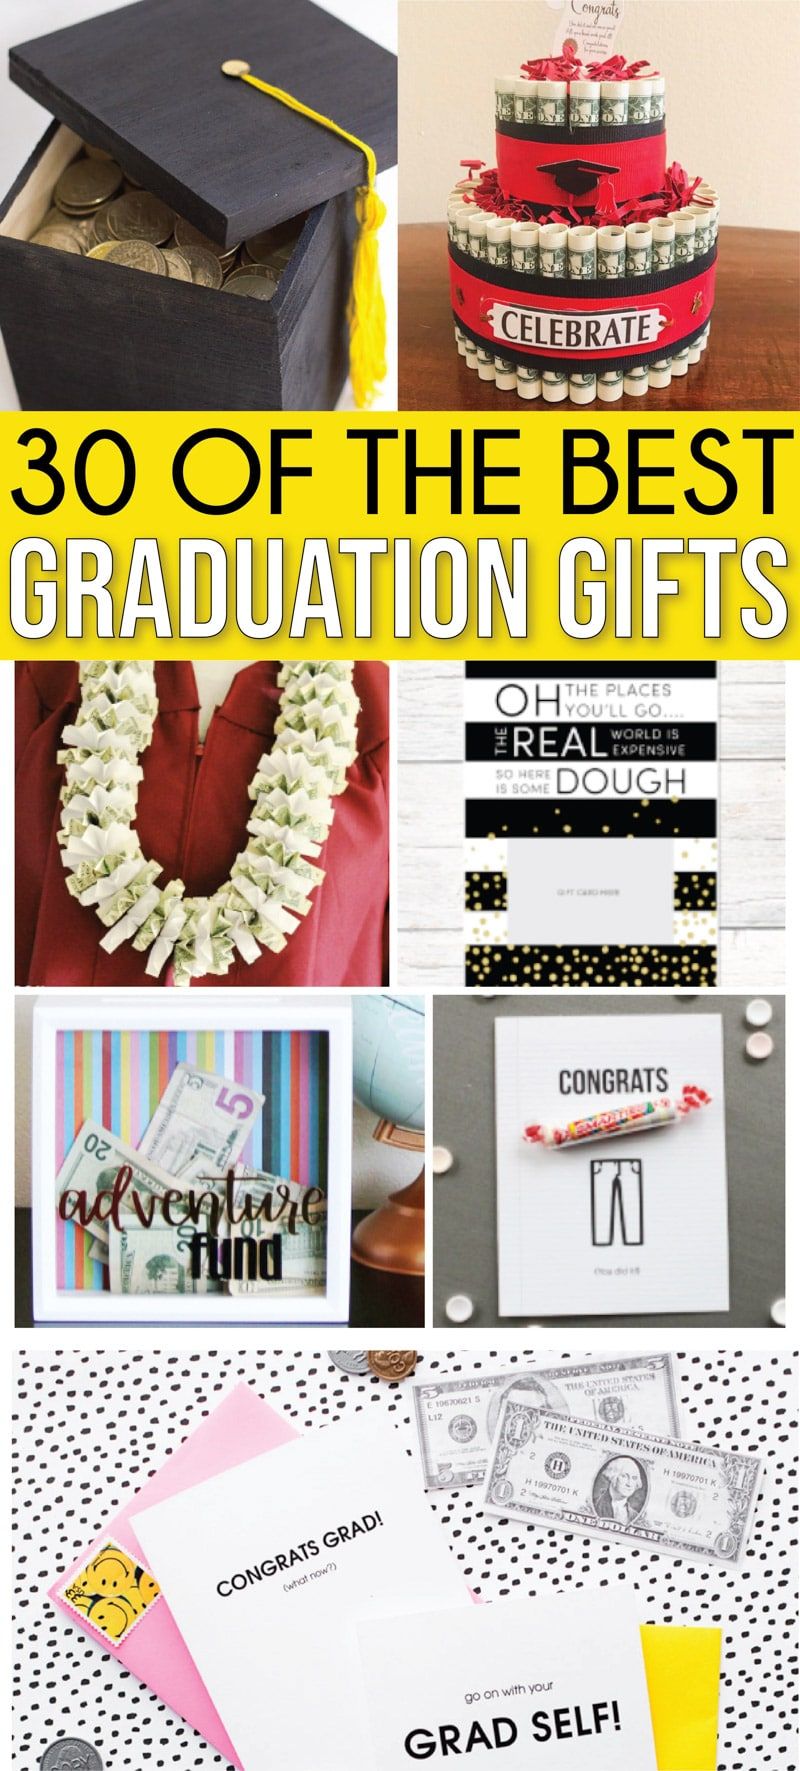 Şimdiye kadarki en iyi mezuniyet hediyesi fikirleri! Kızlar, erkekler, arkadaşlar ve hatta erkek arkadaş için lise ve üniversite mezuniyet hediyesi fikirlerinin nihai koleksiyonu! Para veya hediye kartları hediye etmenin eğlenceli yolları ve harika, ucuz hediyeler!